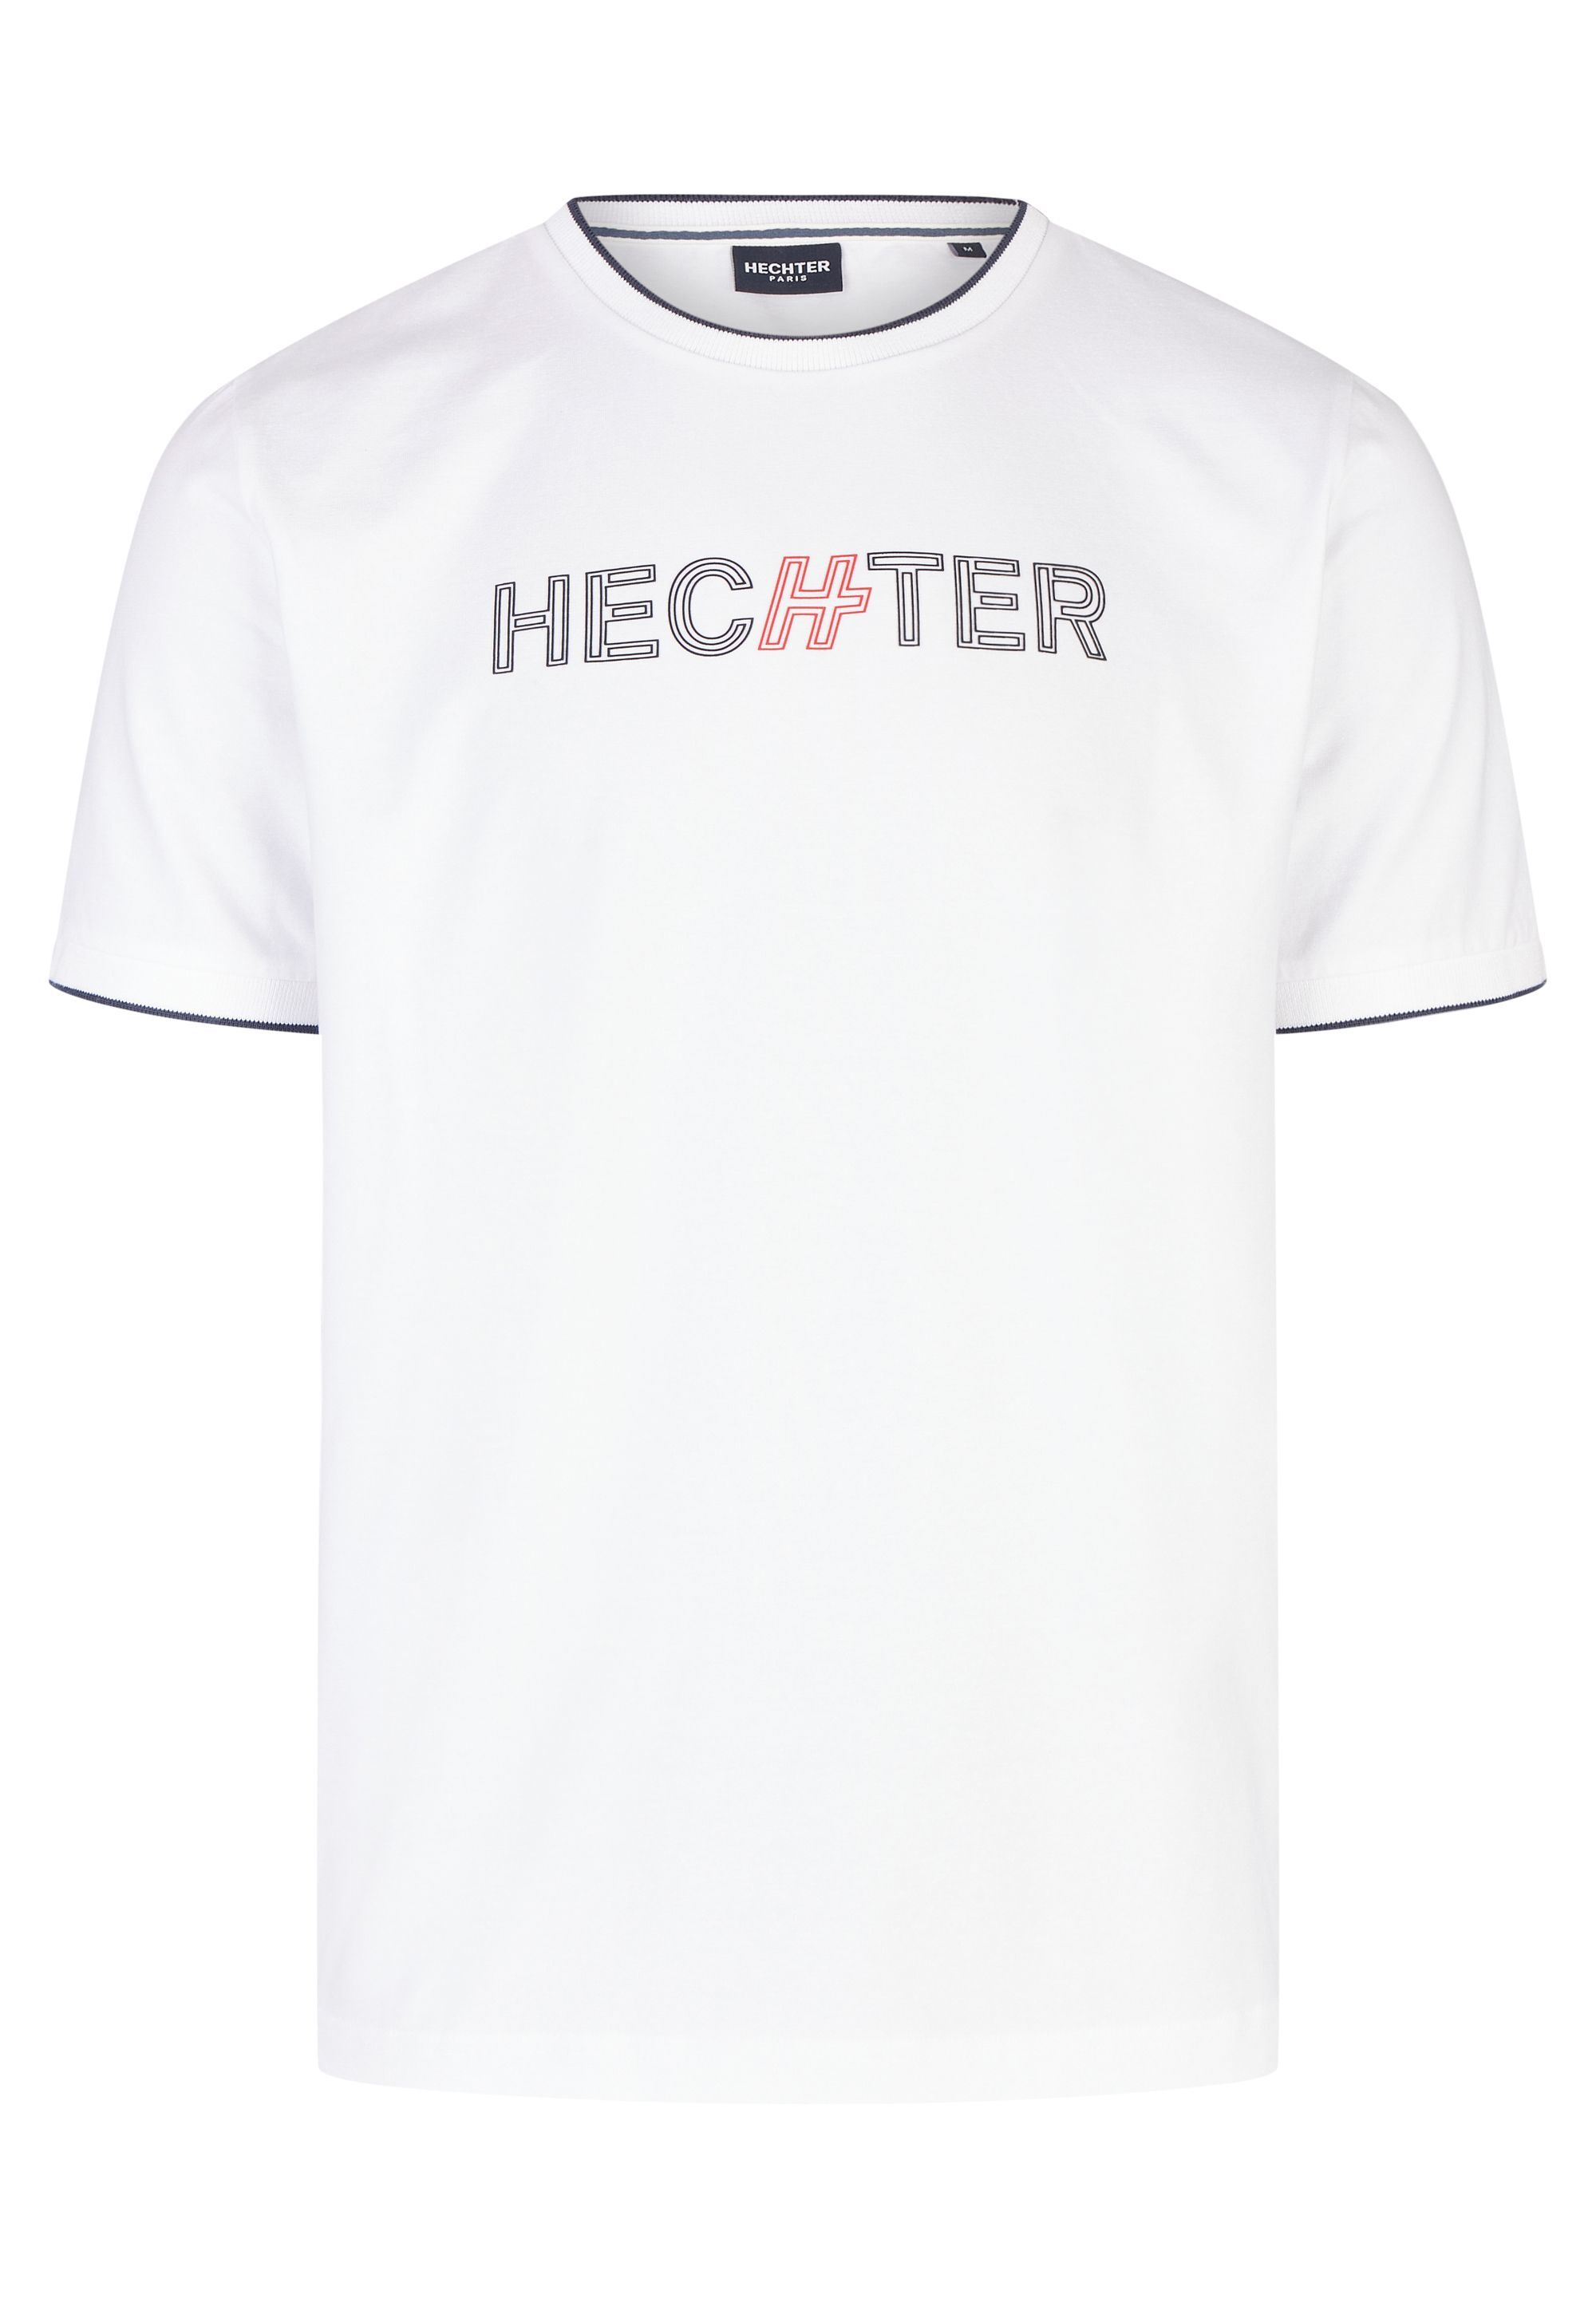 Der PARIS HECHTER offizielle Rundhals | Sportives T-Shirt Onlineshop